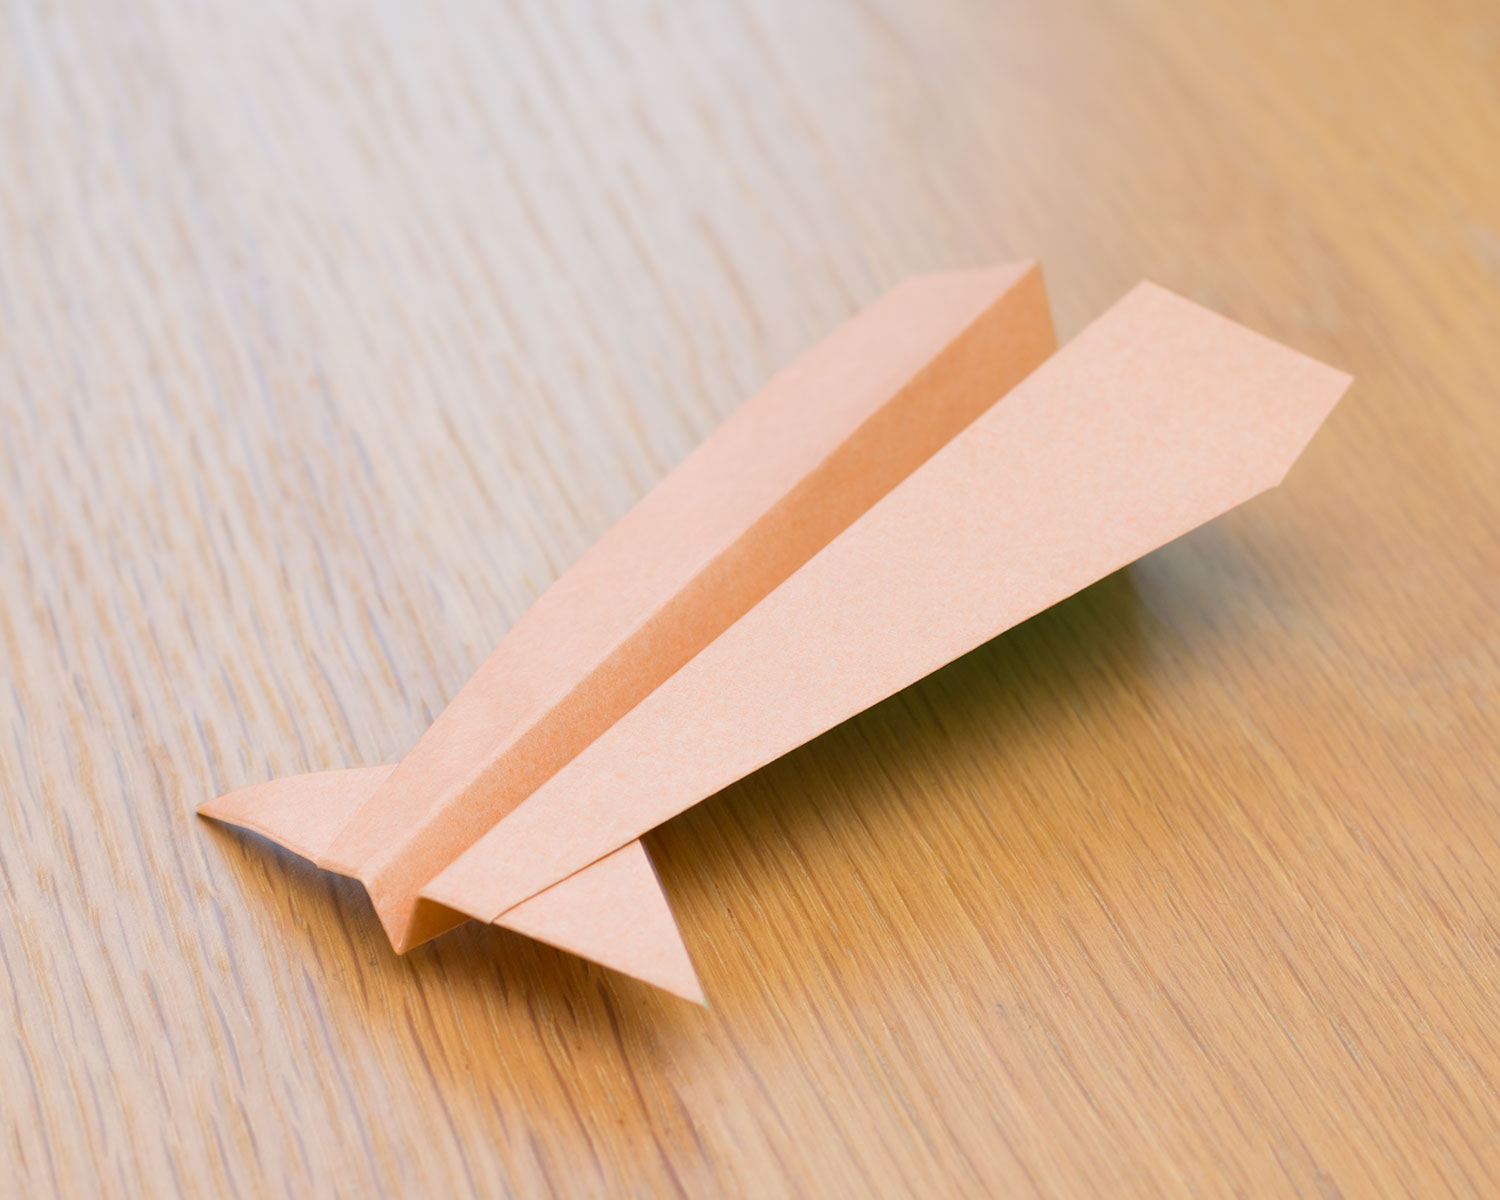 図解で簡単 紙飛行機 いかひこうき の折り方 イカもよく空飛ぶ